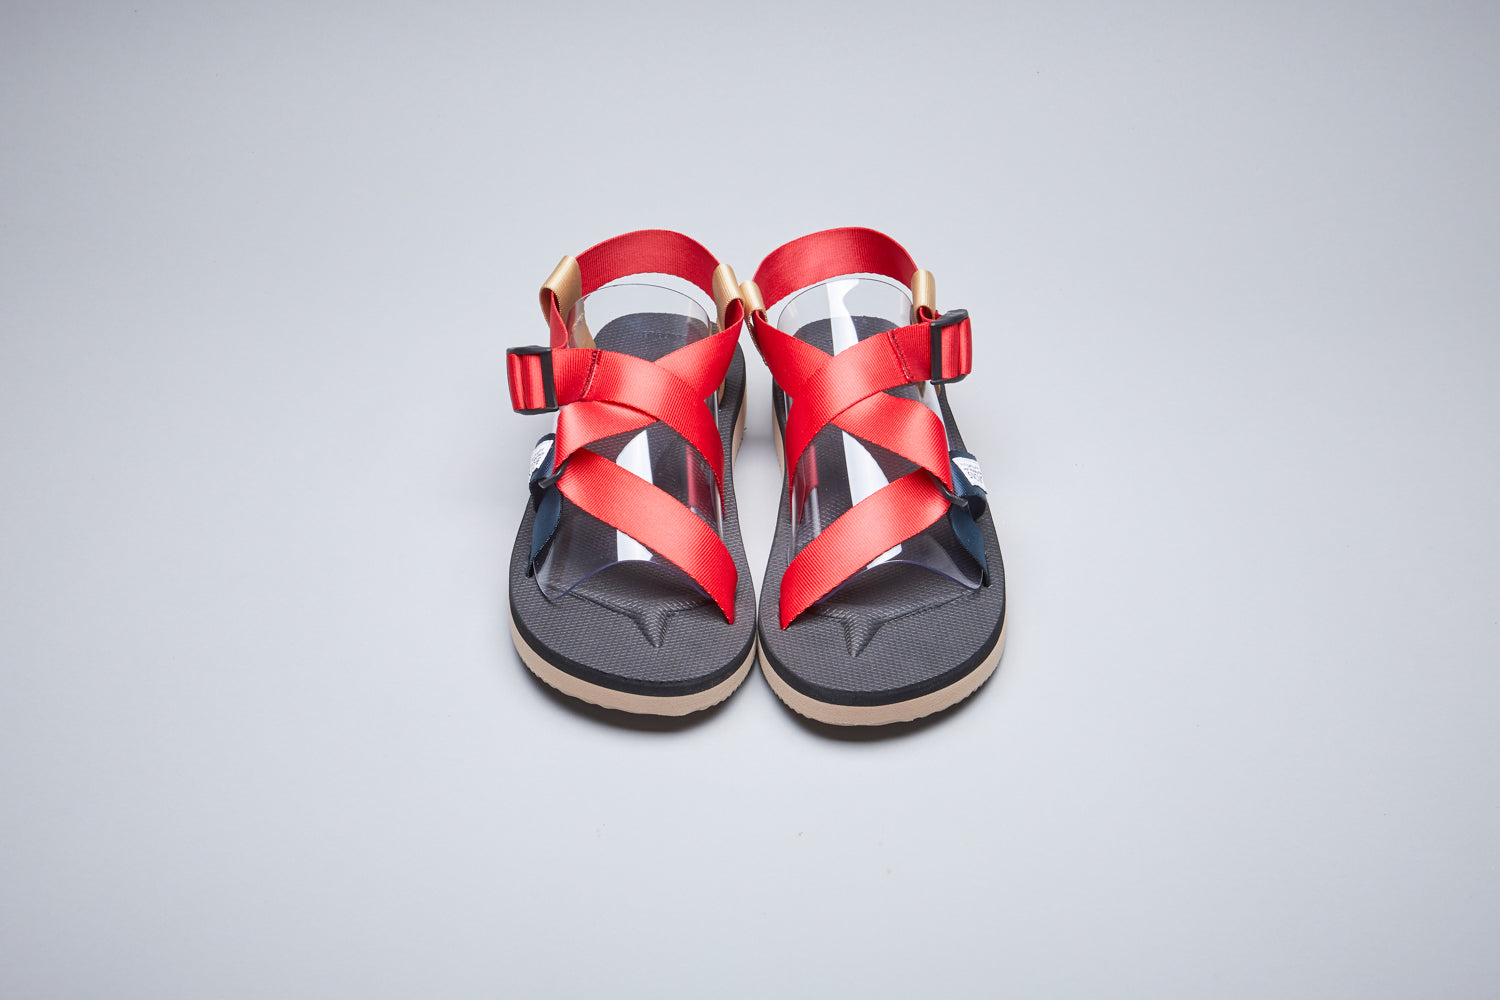 SUICOKE-Sandals-CHIN2-CAB - Red/Black-OG-023-2CABOfficial Webstore Spring 2021